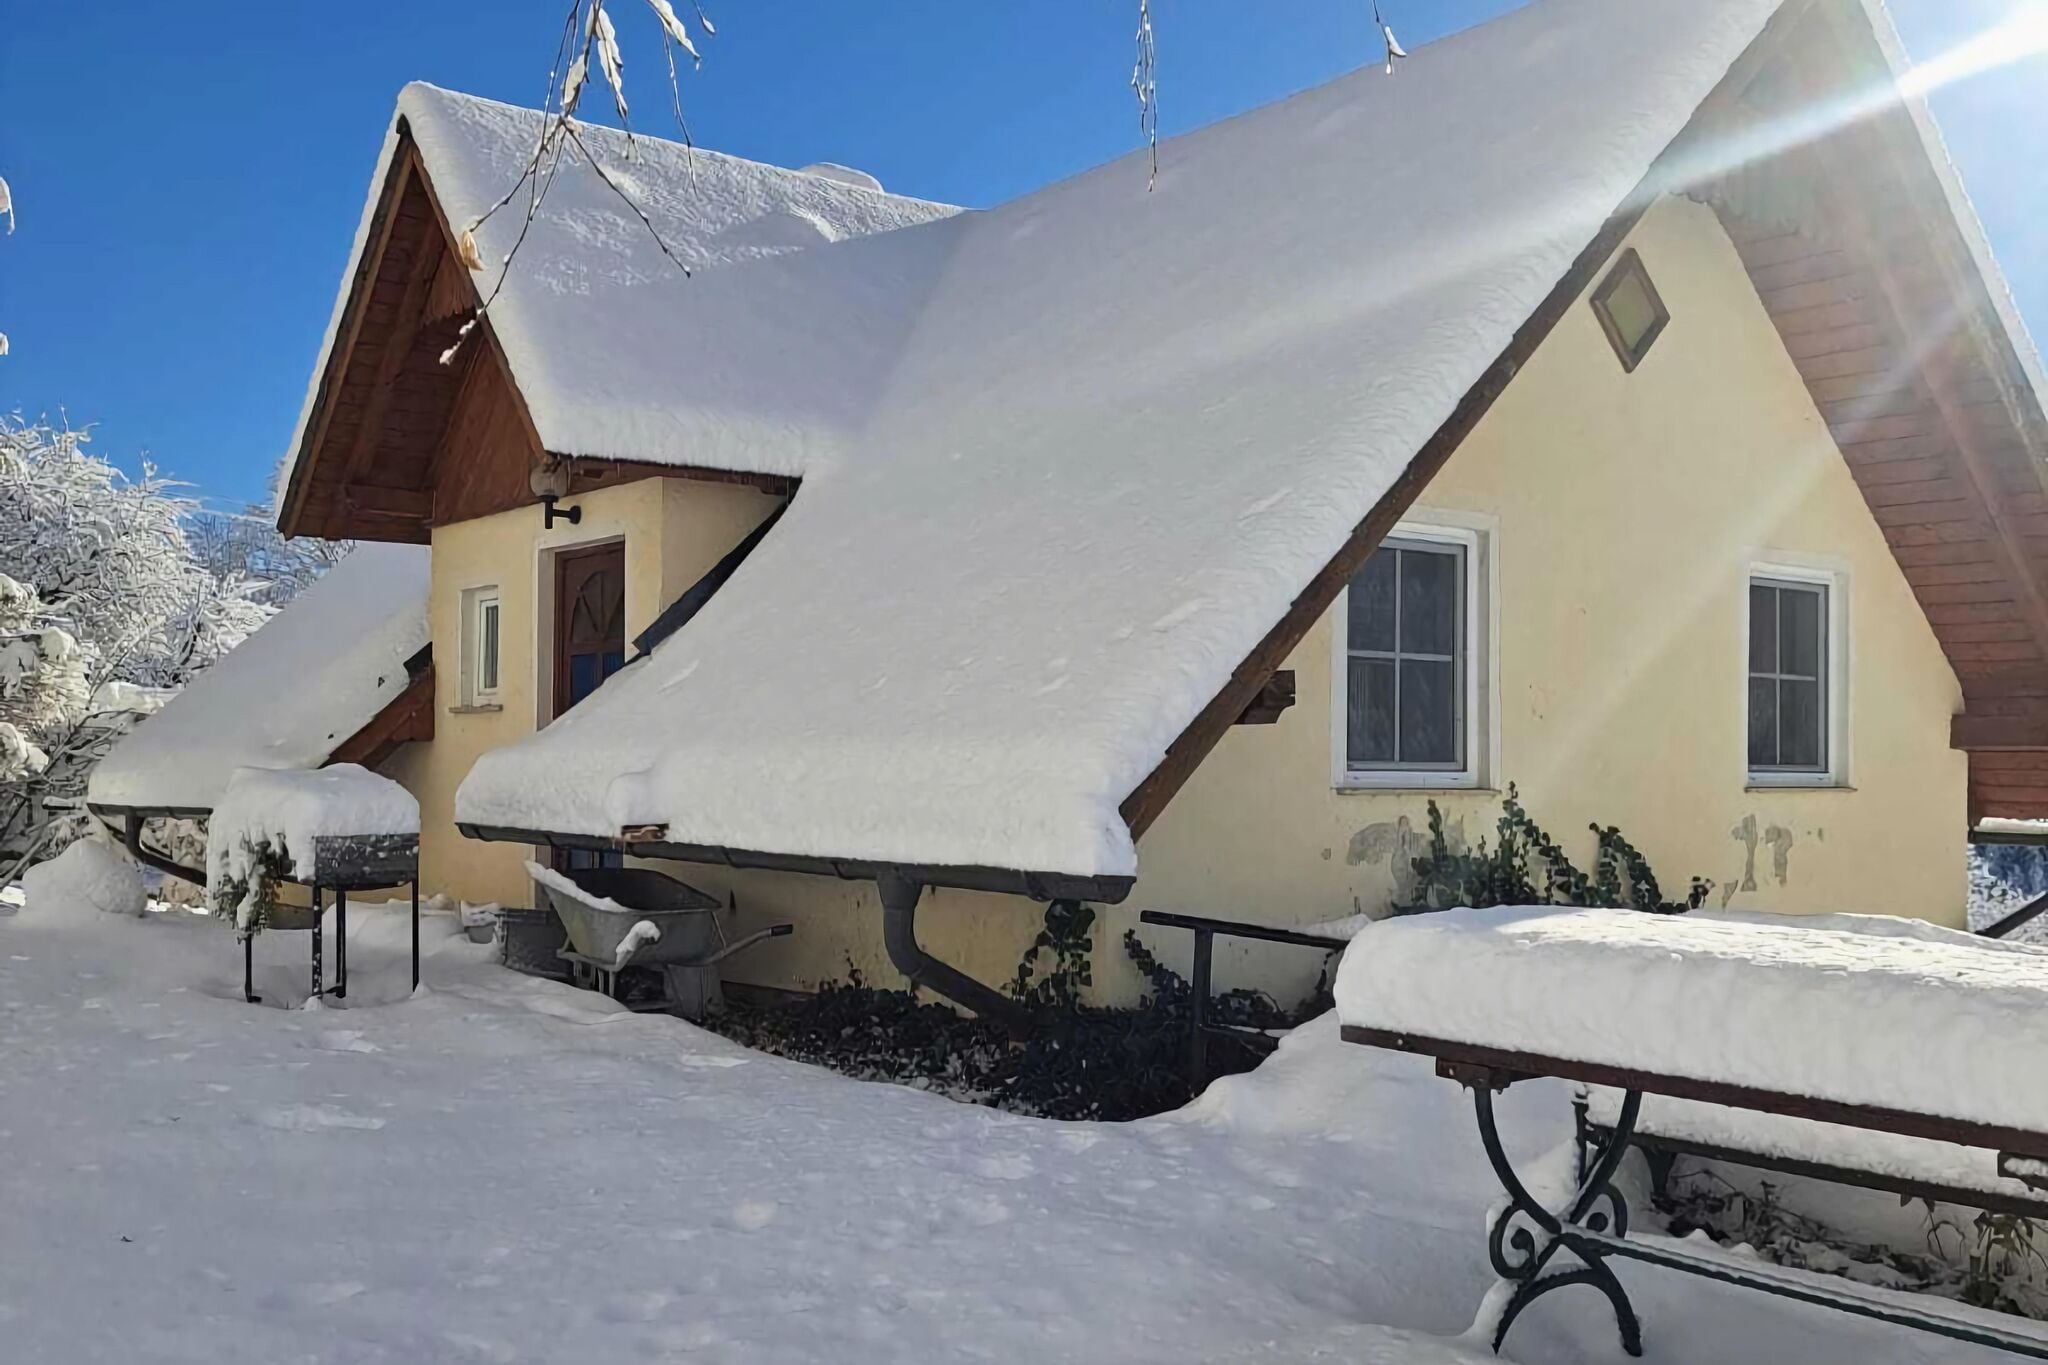 Vakantiehuis in St. Andrä nabij skigebied